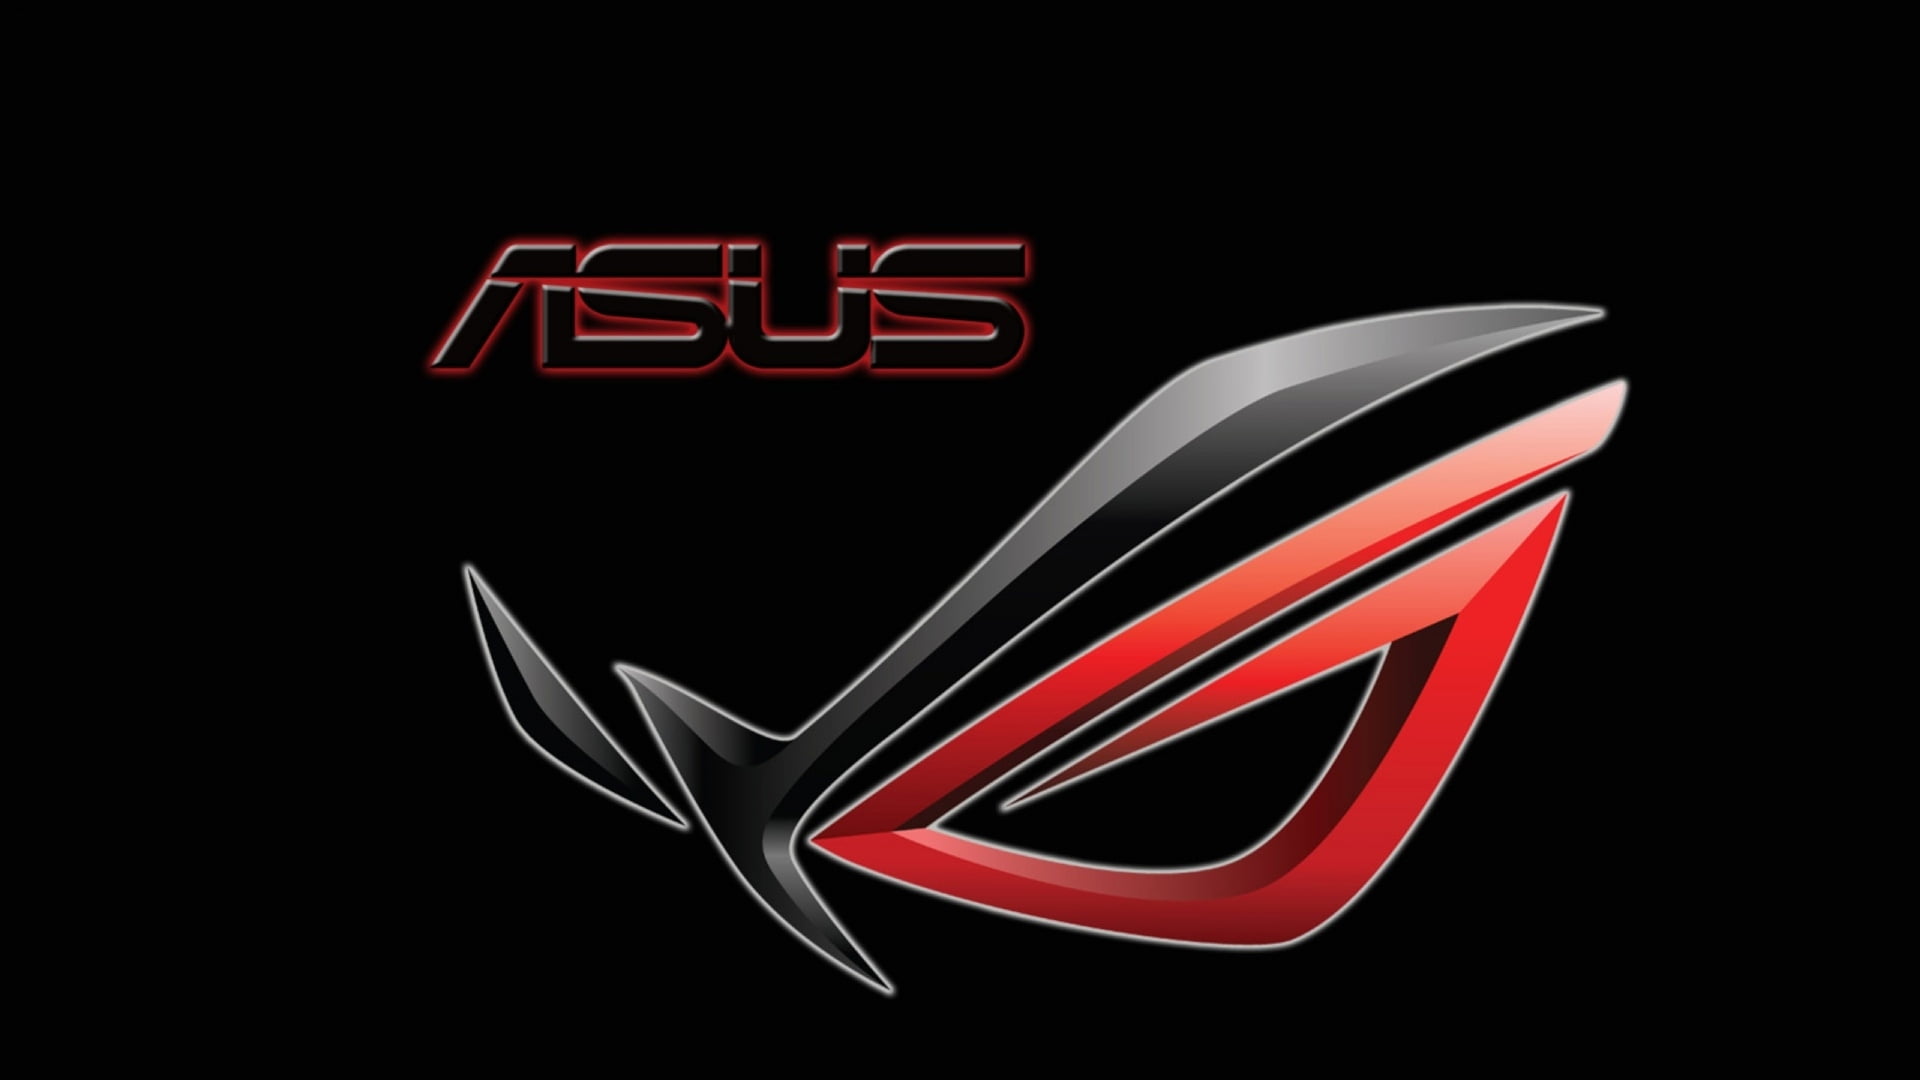 Asus ROG logo